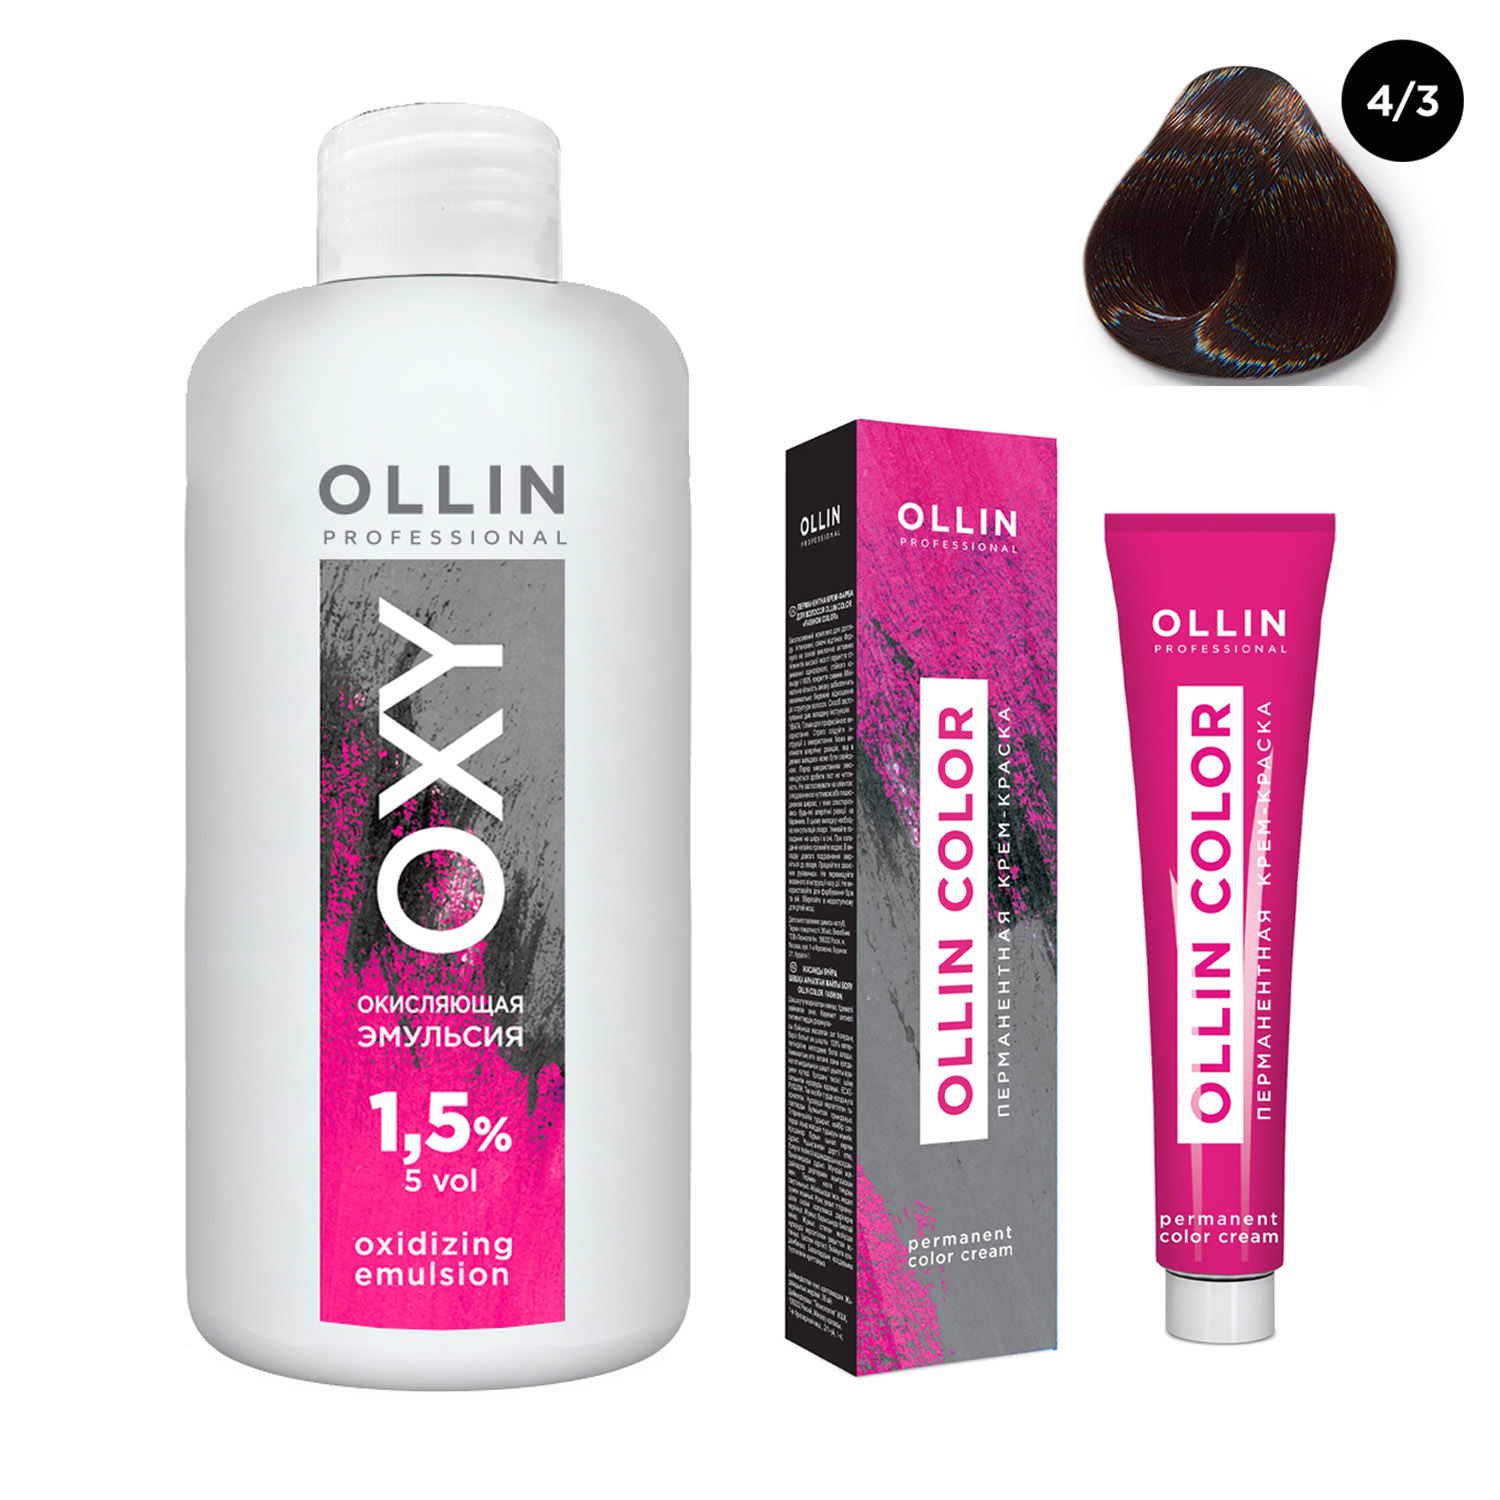 Ollin Professional Набор Перманентная крем-краска для волос Ollin Color оттенок 4/3 шатен золотистый 100 мл + Окисляющая эмульсия Oxy 1,5% 150 мл (Ollin Professional, Ollin Color)